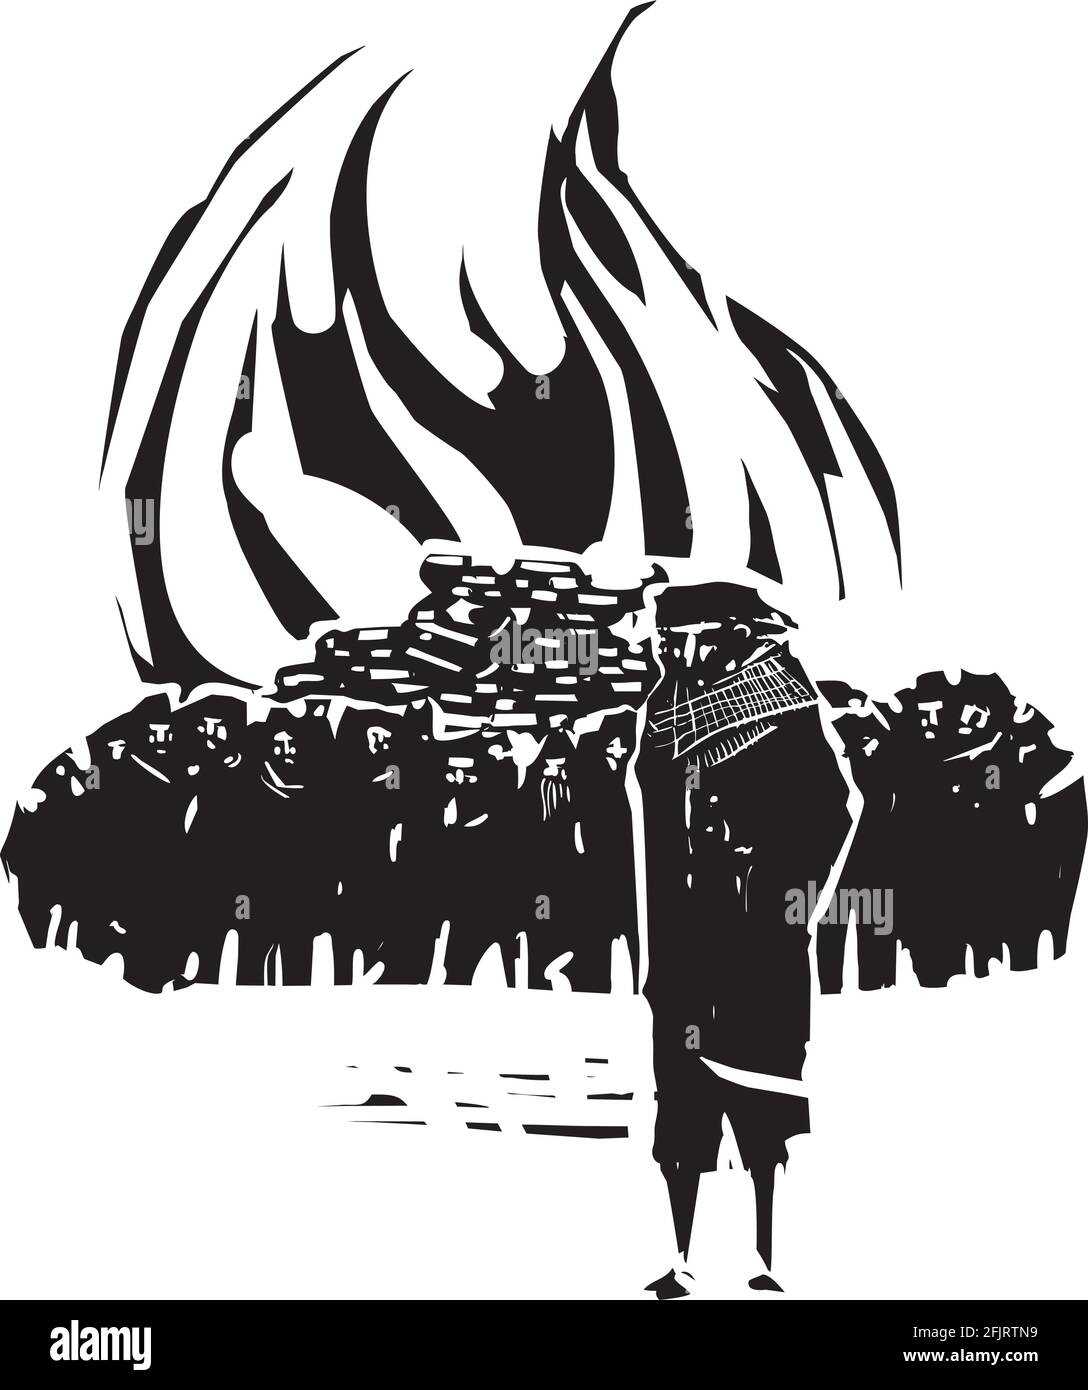 Image de style expressionniste de coupe de bois d'un homme qui mène une foule de personnes qui brûlent des livres Illustration de Vecteur